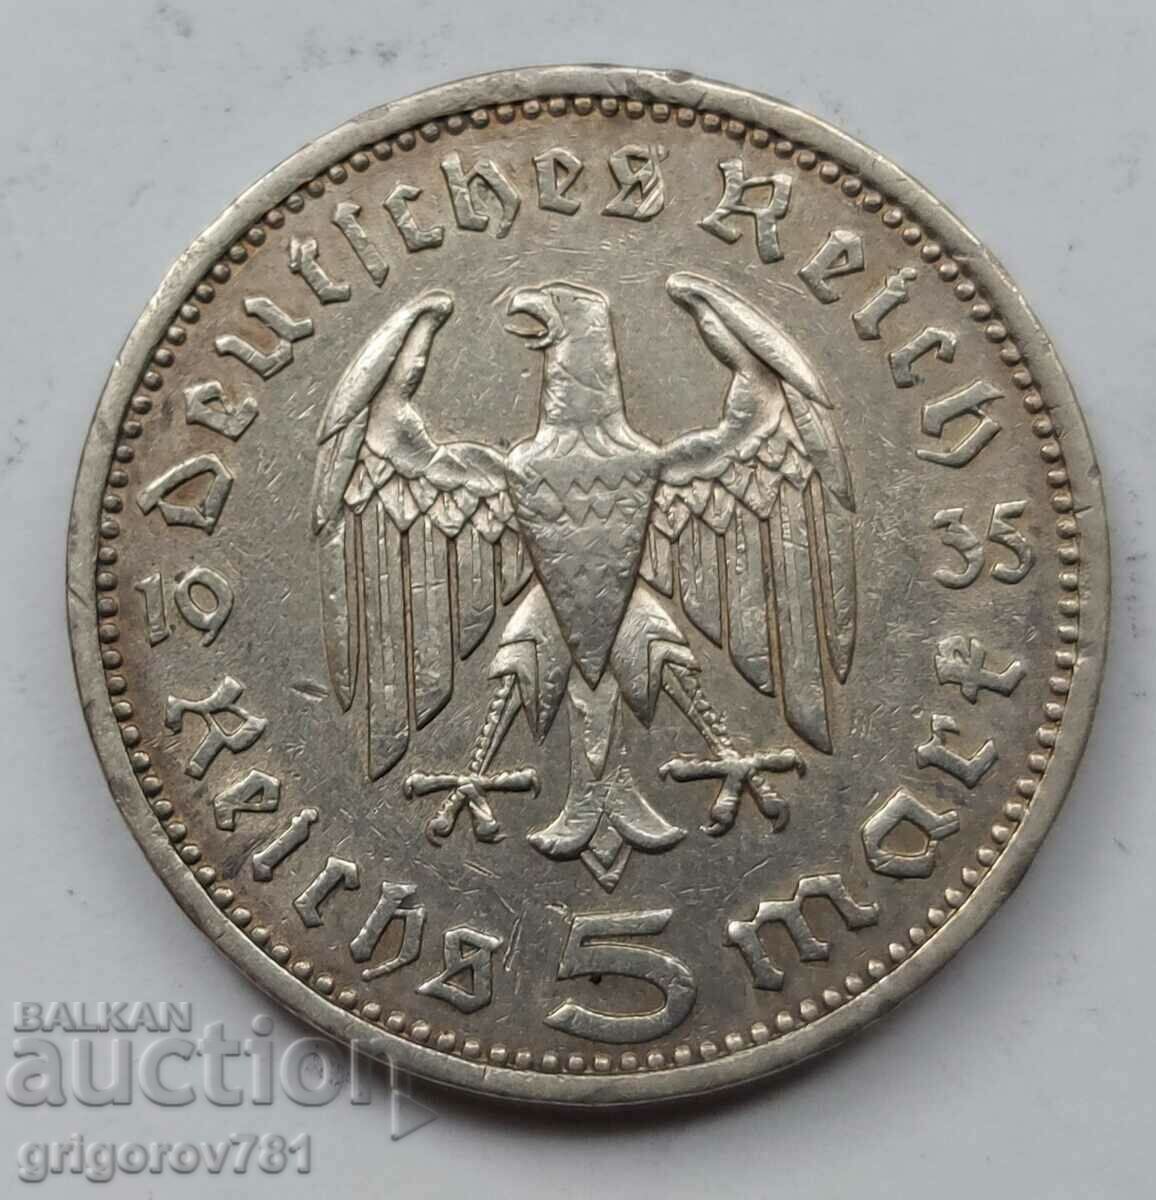 5 mărci de argint Germania 1935 A III Reich Moneda de argint #56